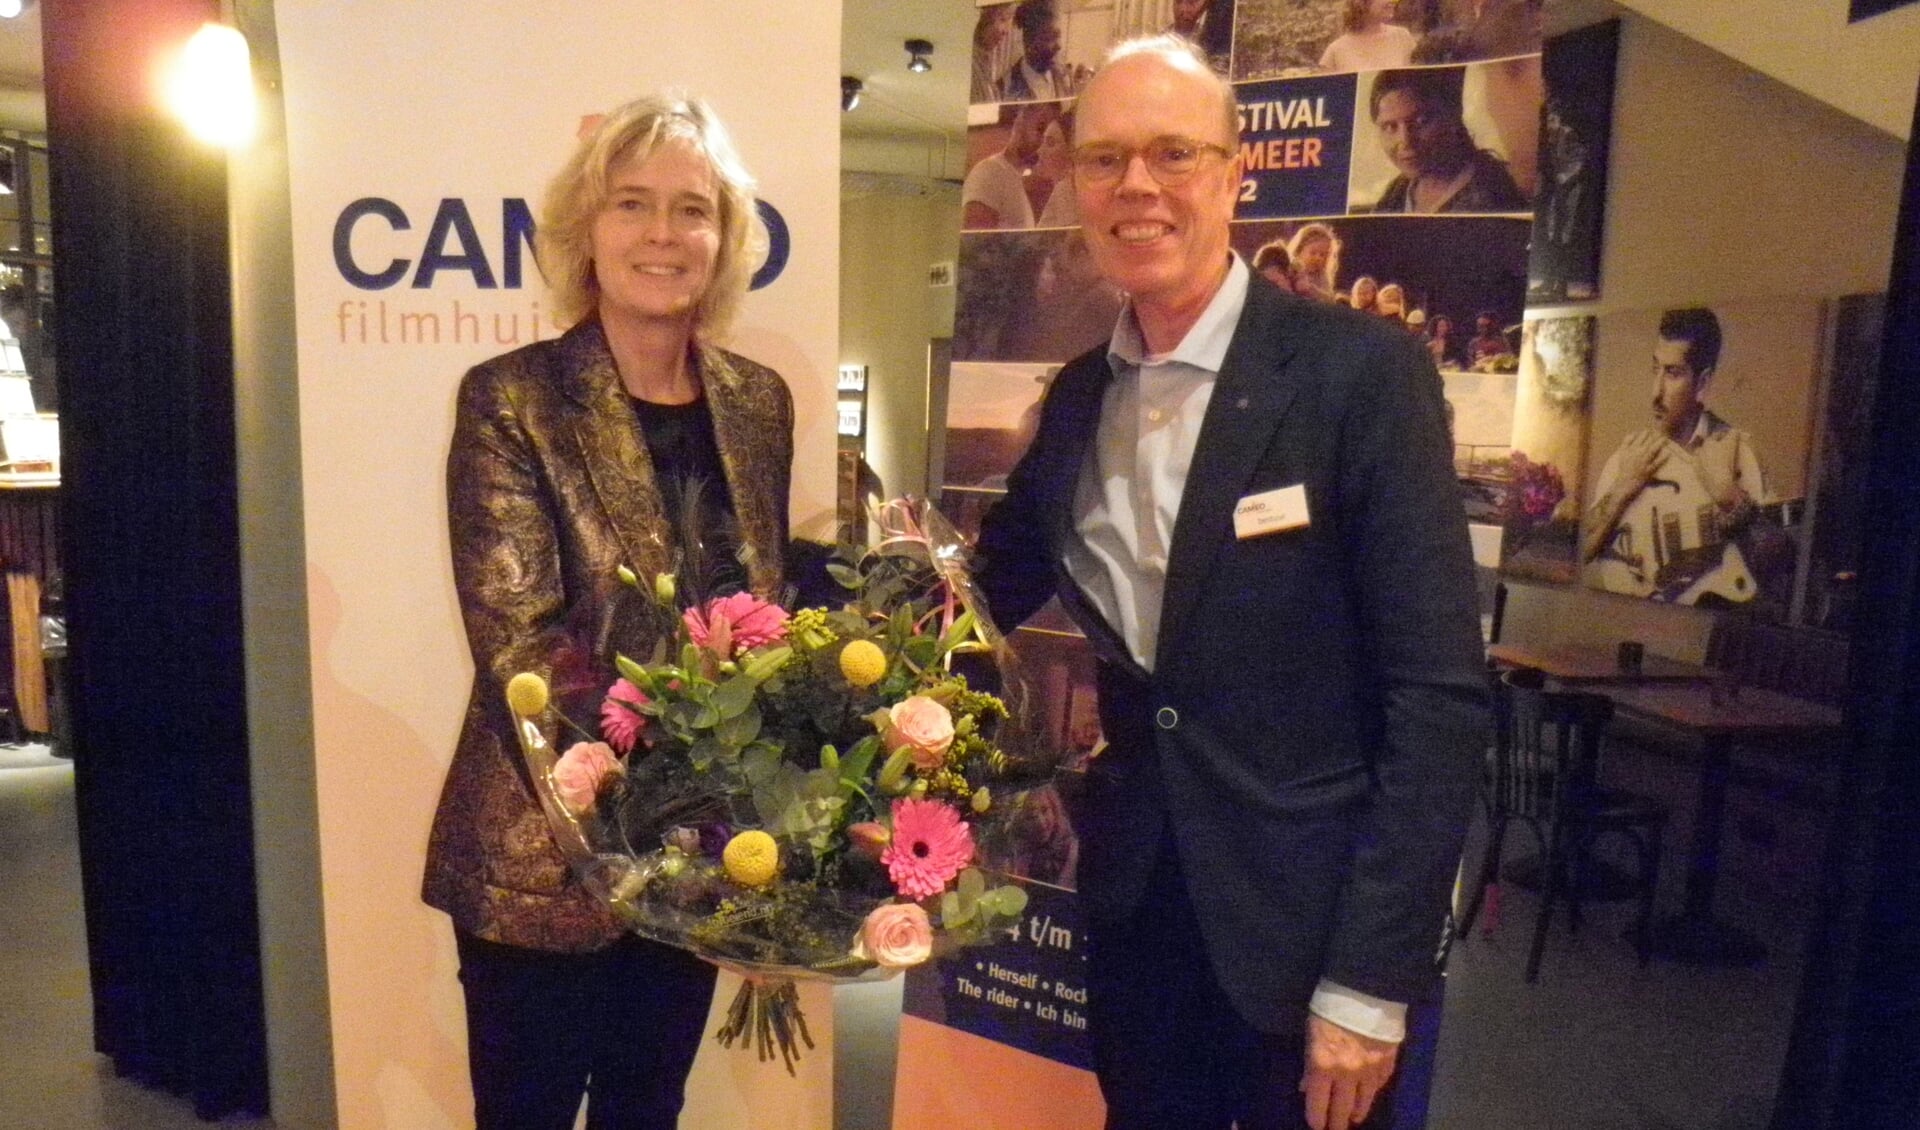 Wethouder Ingeborg ter Laak wordt door Lorens Keip van Filmhuis Cameo na de opening van het Filmfestival in de bloemen gezet. Foto Kees van Rongen